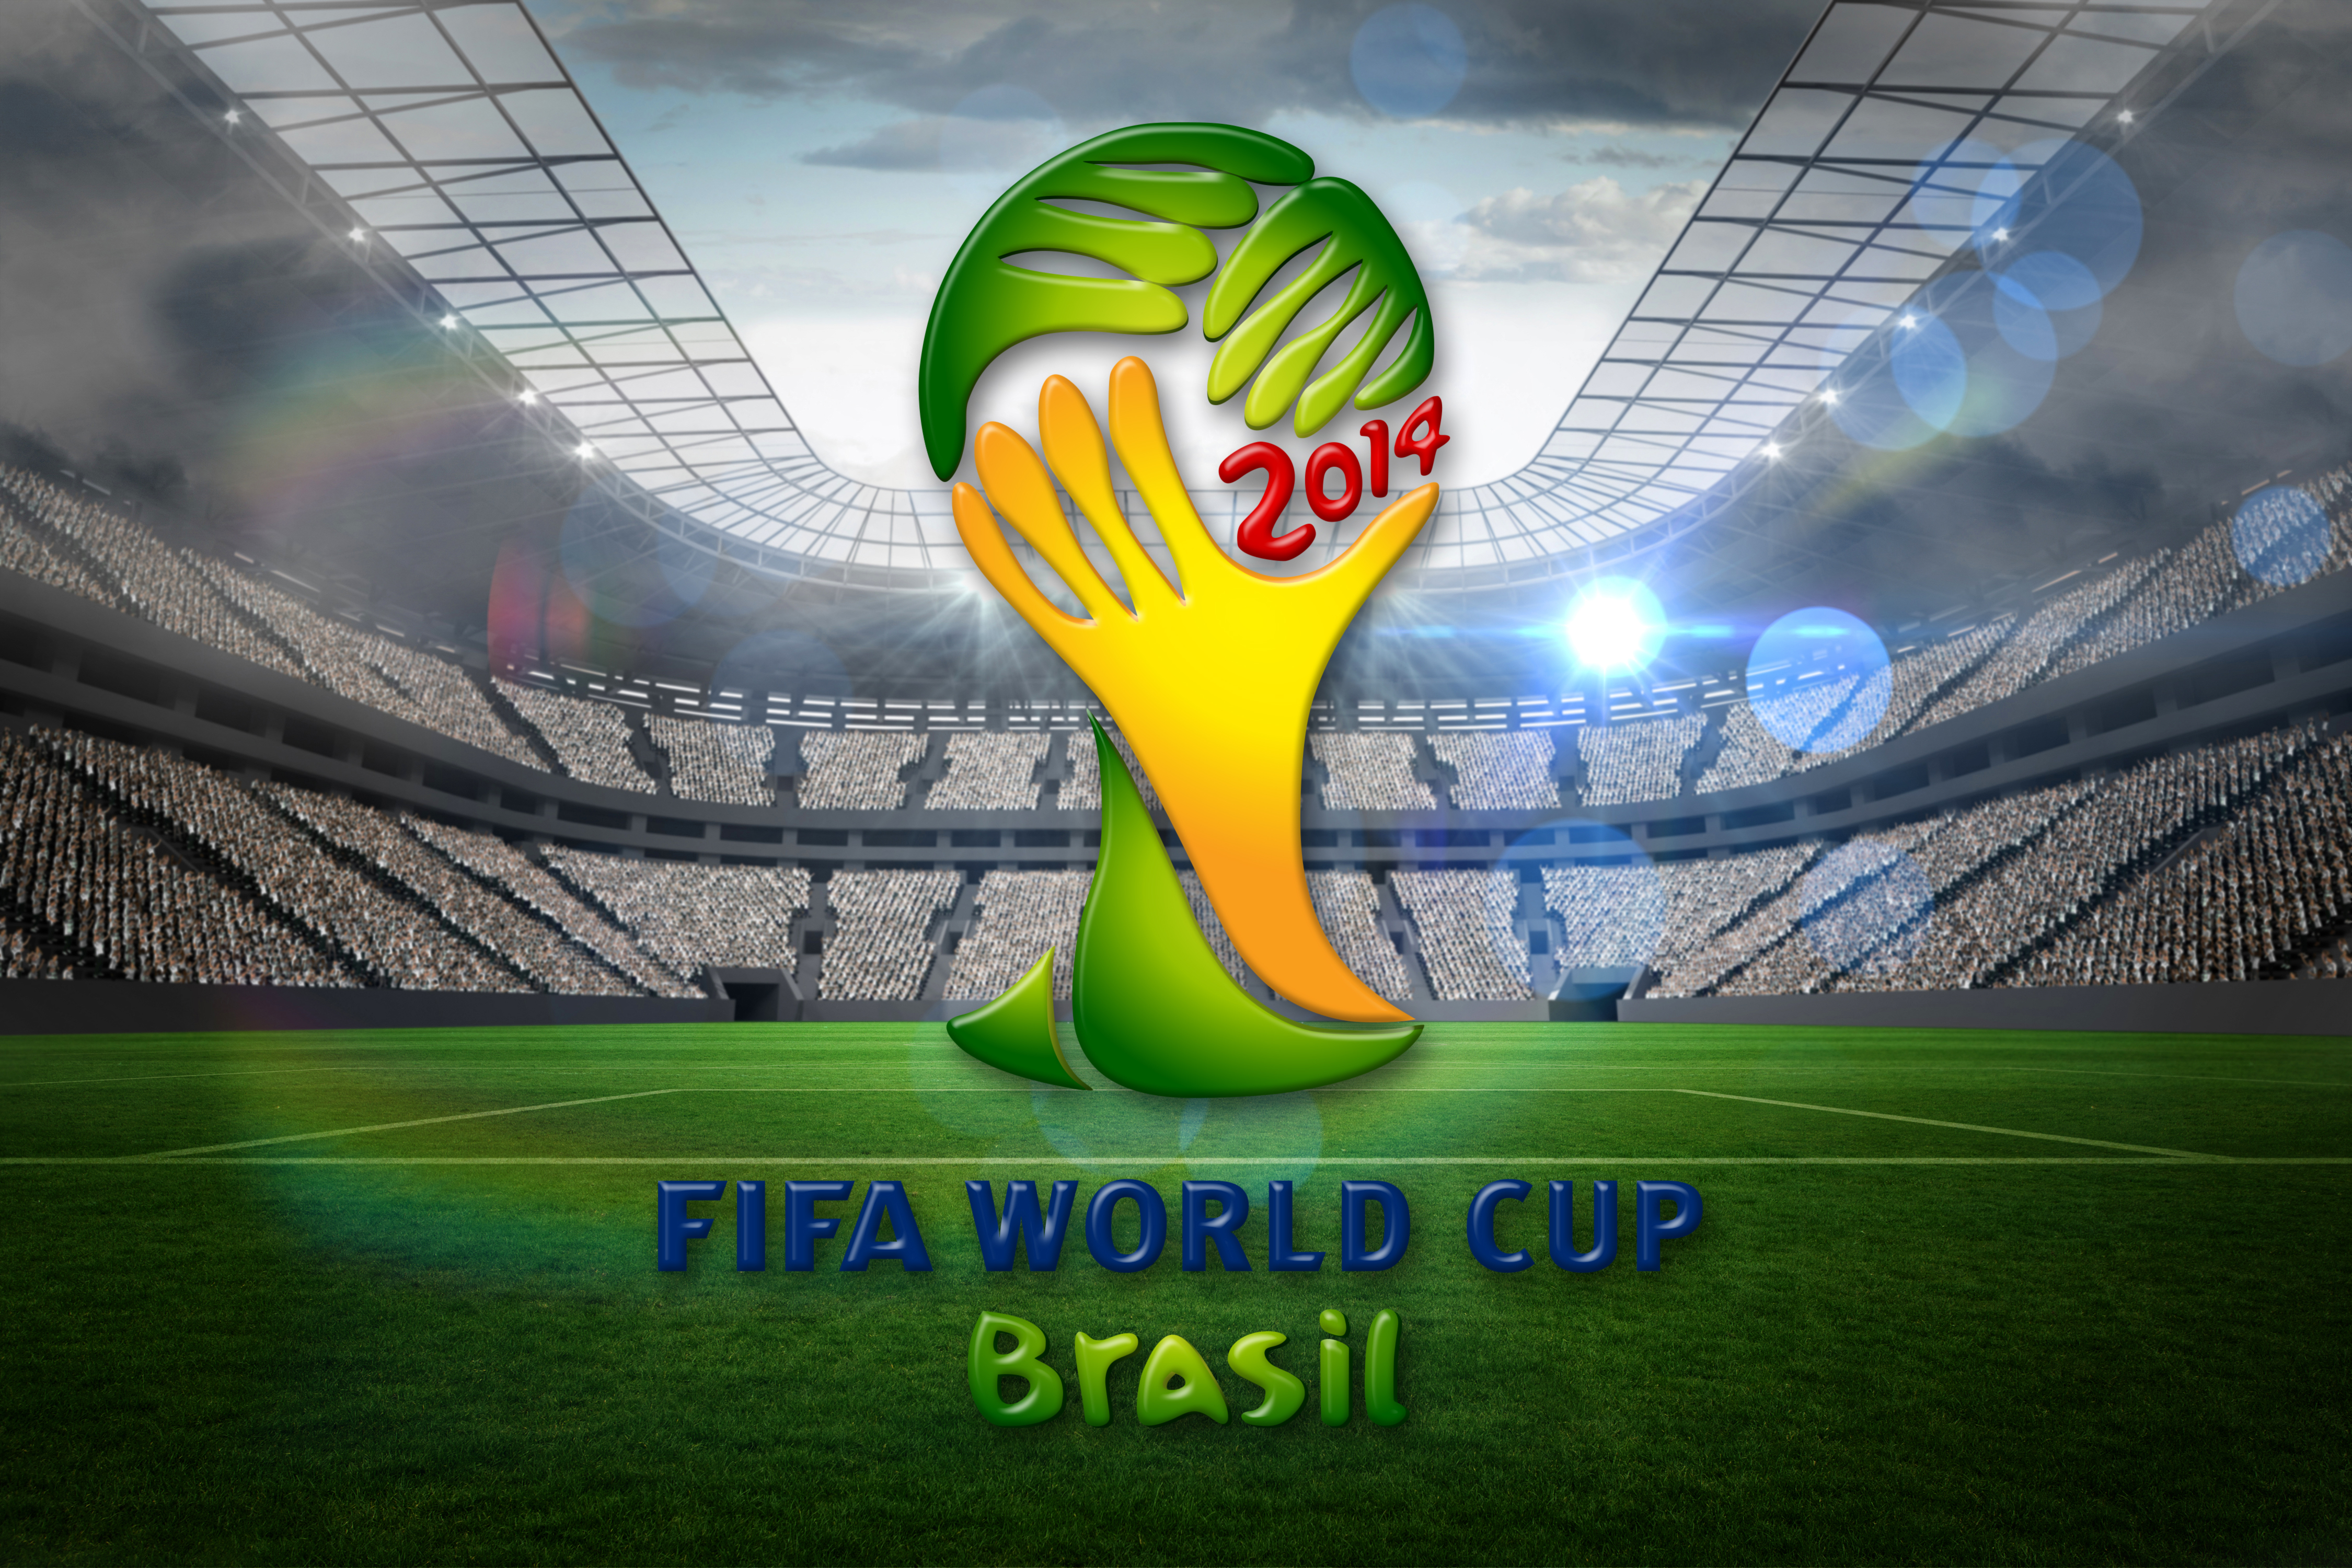 World cup 2014. ФИФА ворлд кап 2014. ФИФА 2014 Бразилия. 2014 ФИФА ворлд кап Бразил.